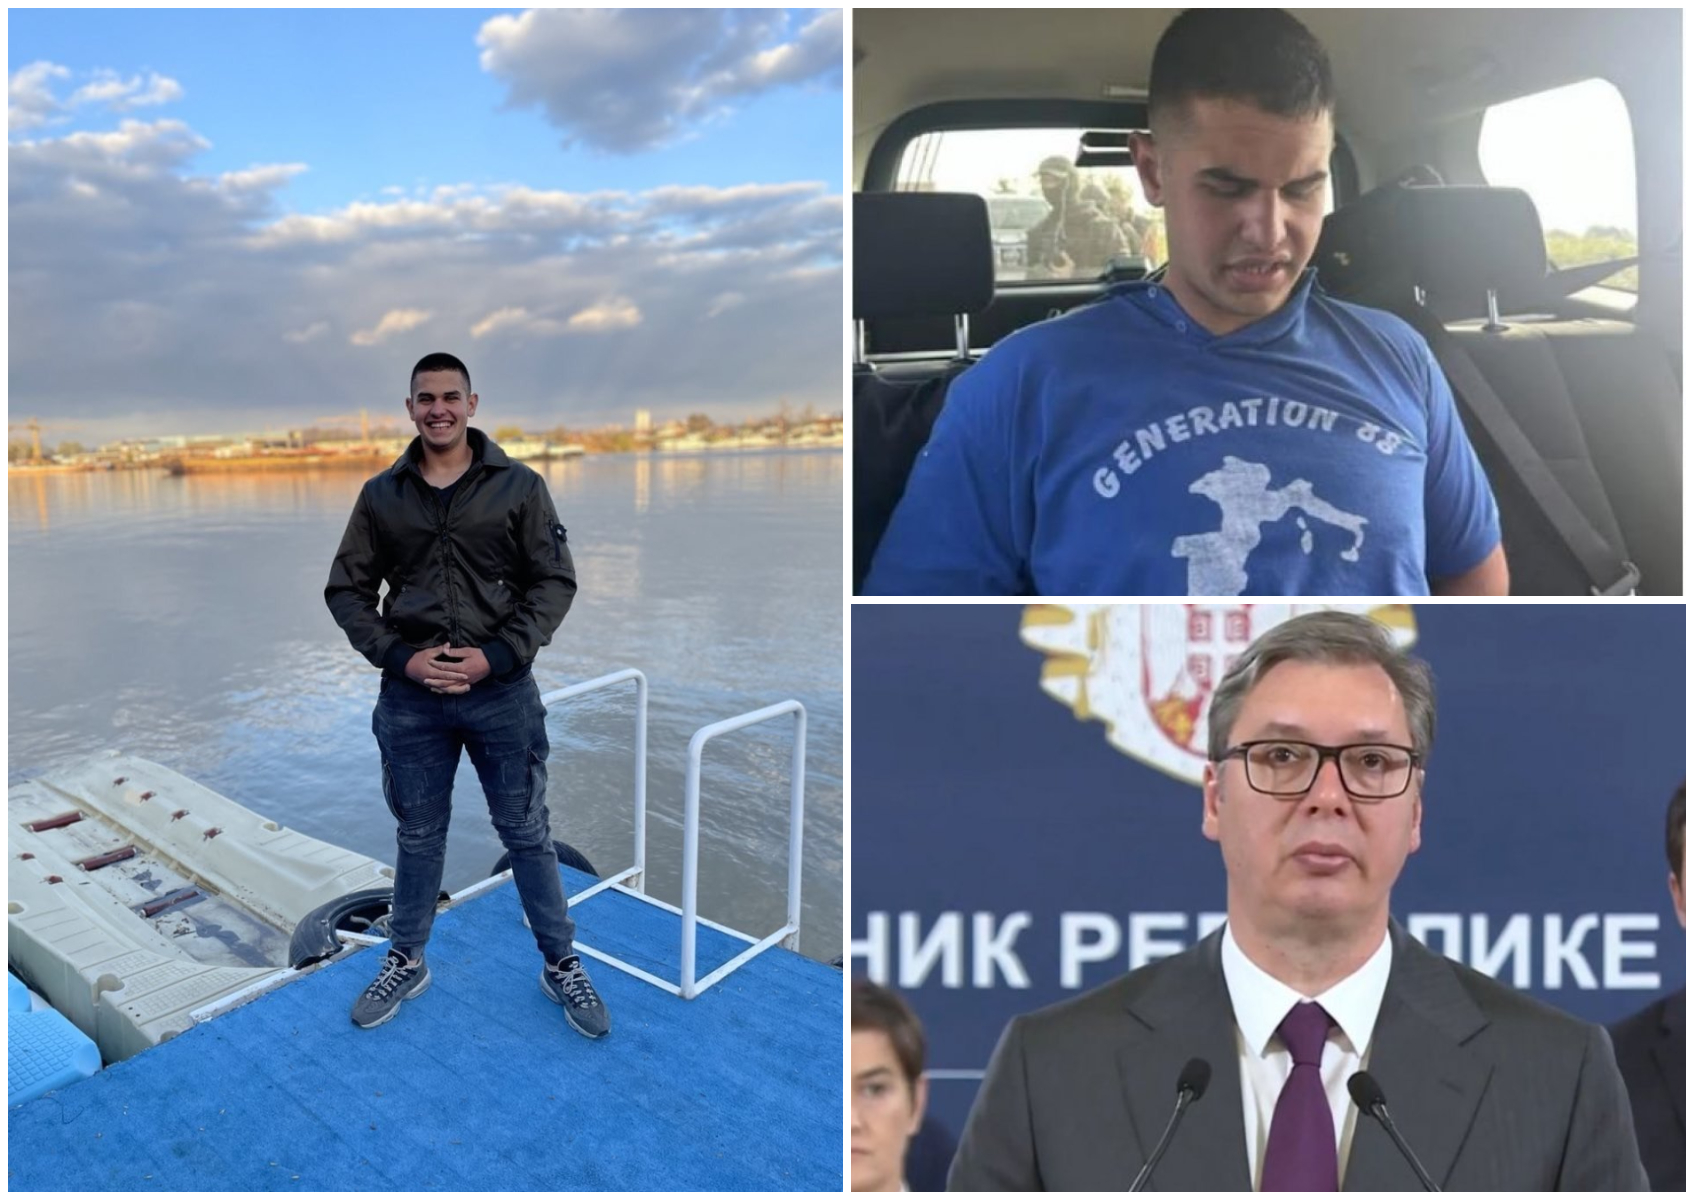 Μακελειό στη Σερβία: Φορούσε μπλούζα με ναζιστικό σύμβολο ο δράστης - Έκτακτα μέτρα ανακοίνωσε ο Αλεξάνταρ Βούτσιτς